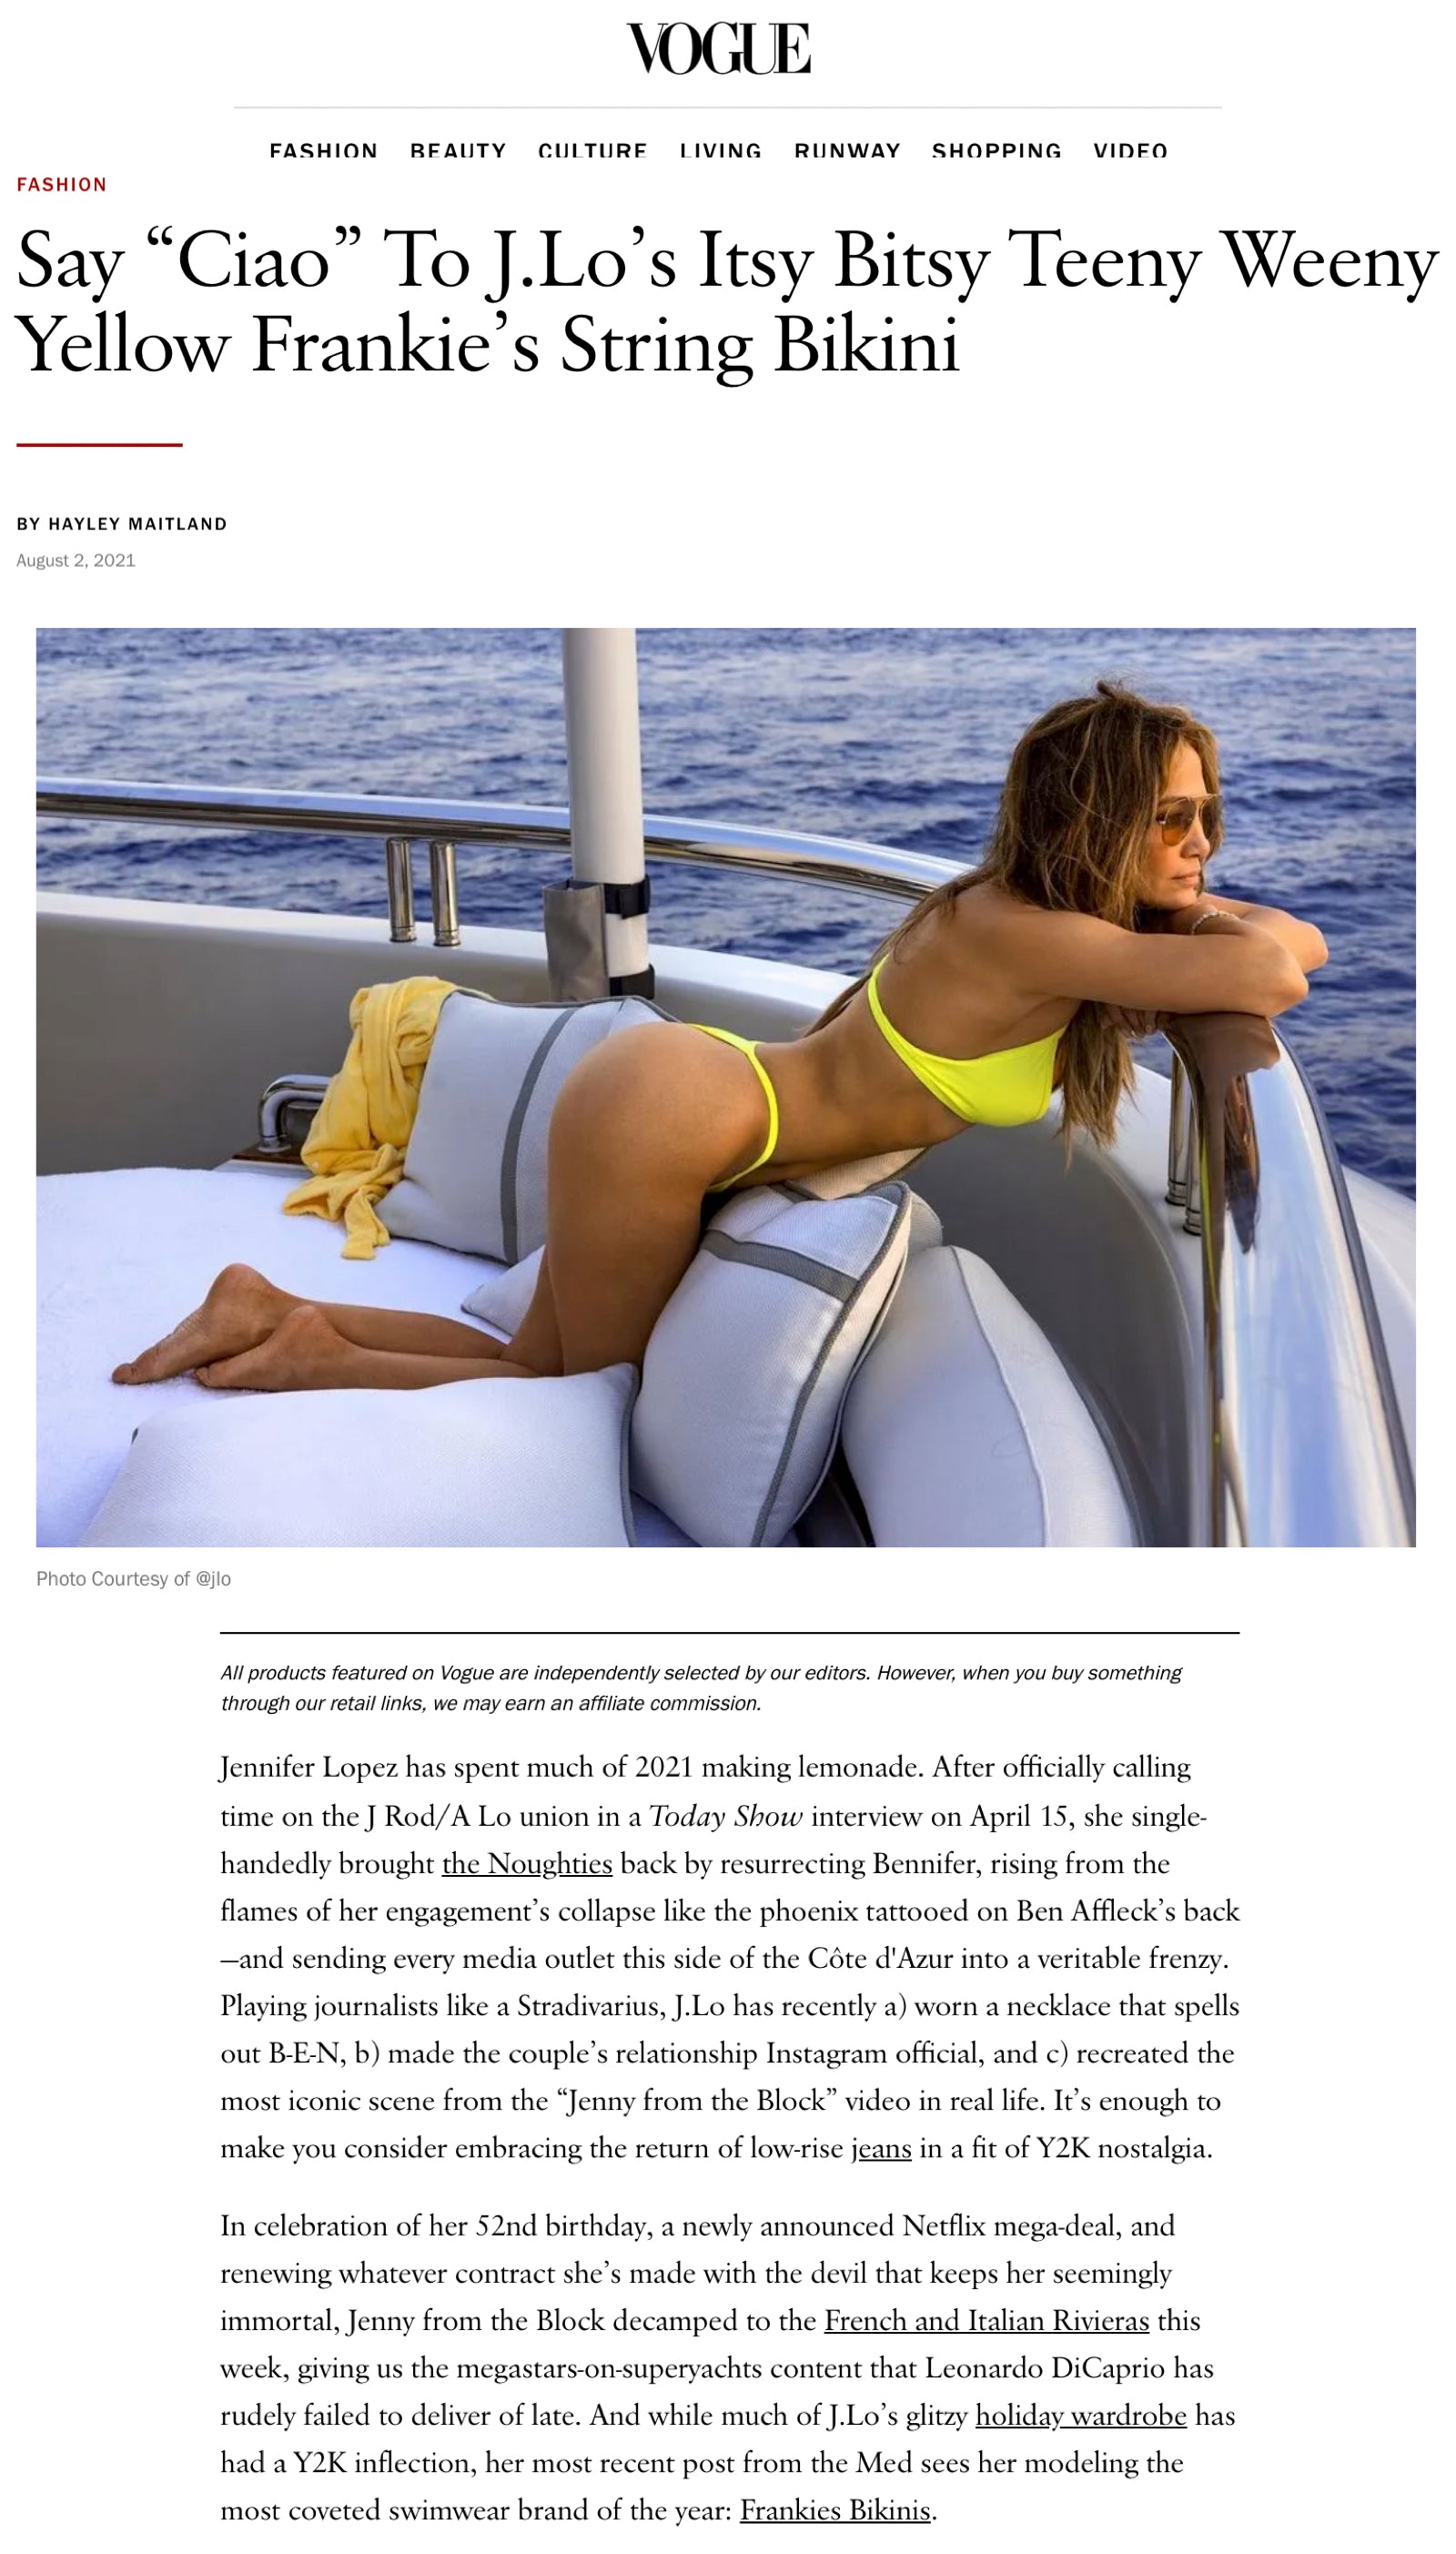 Say “Ciao” To J.Lo's Itsy Bitsy Teeny Weeny Yellow Frankie's String Bikini